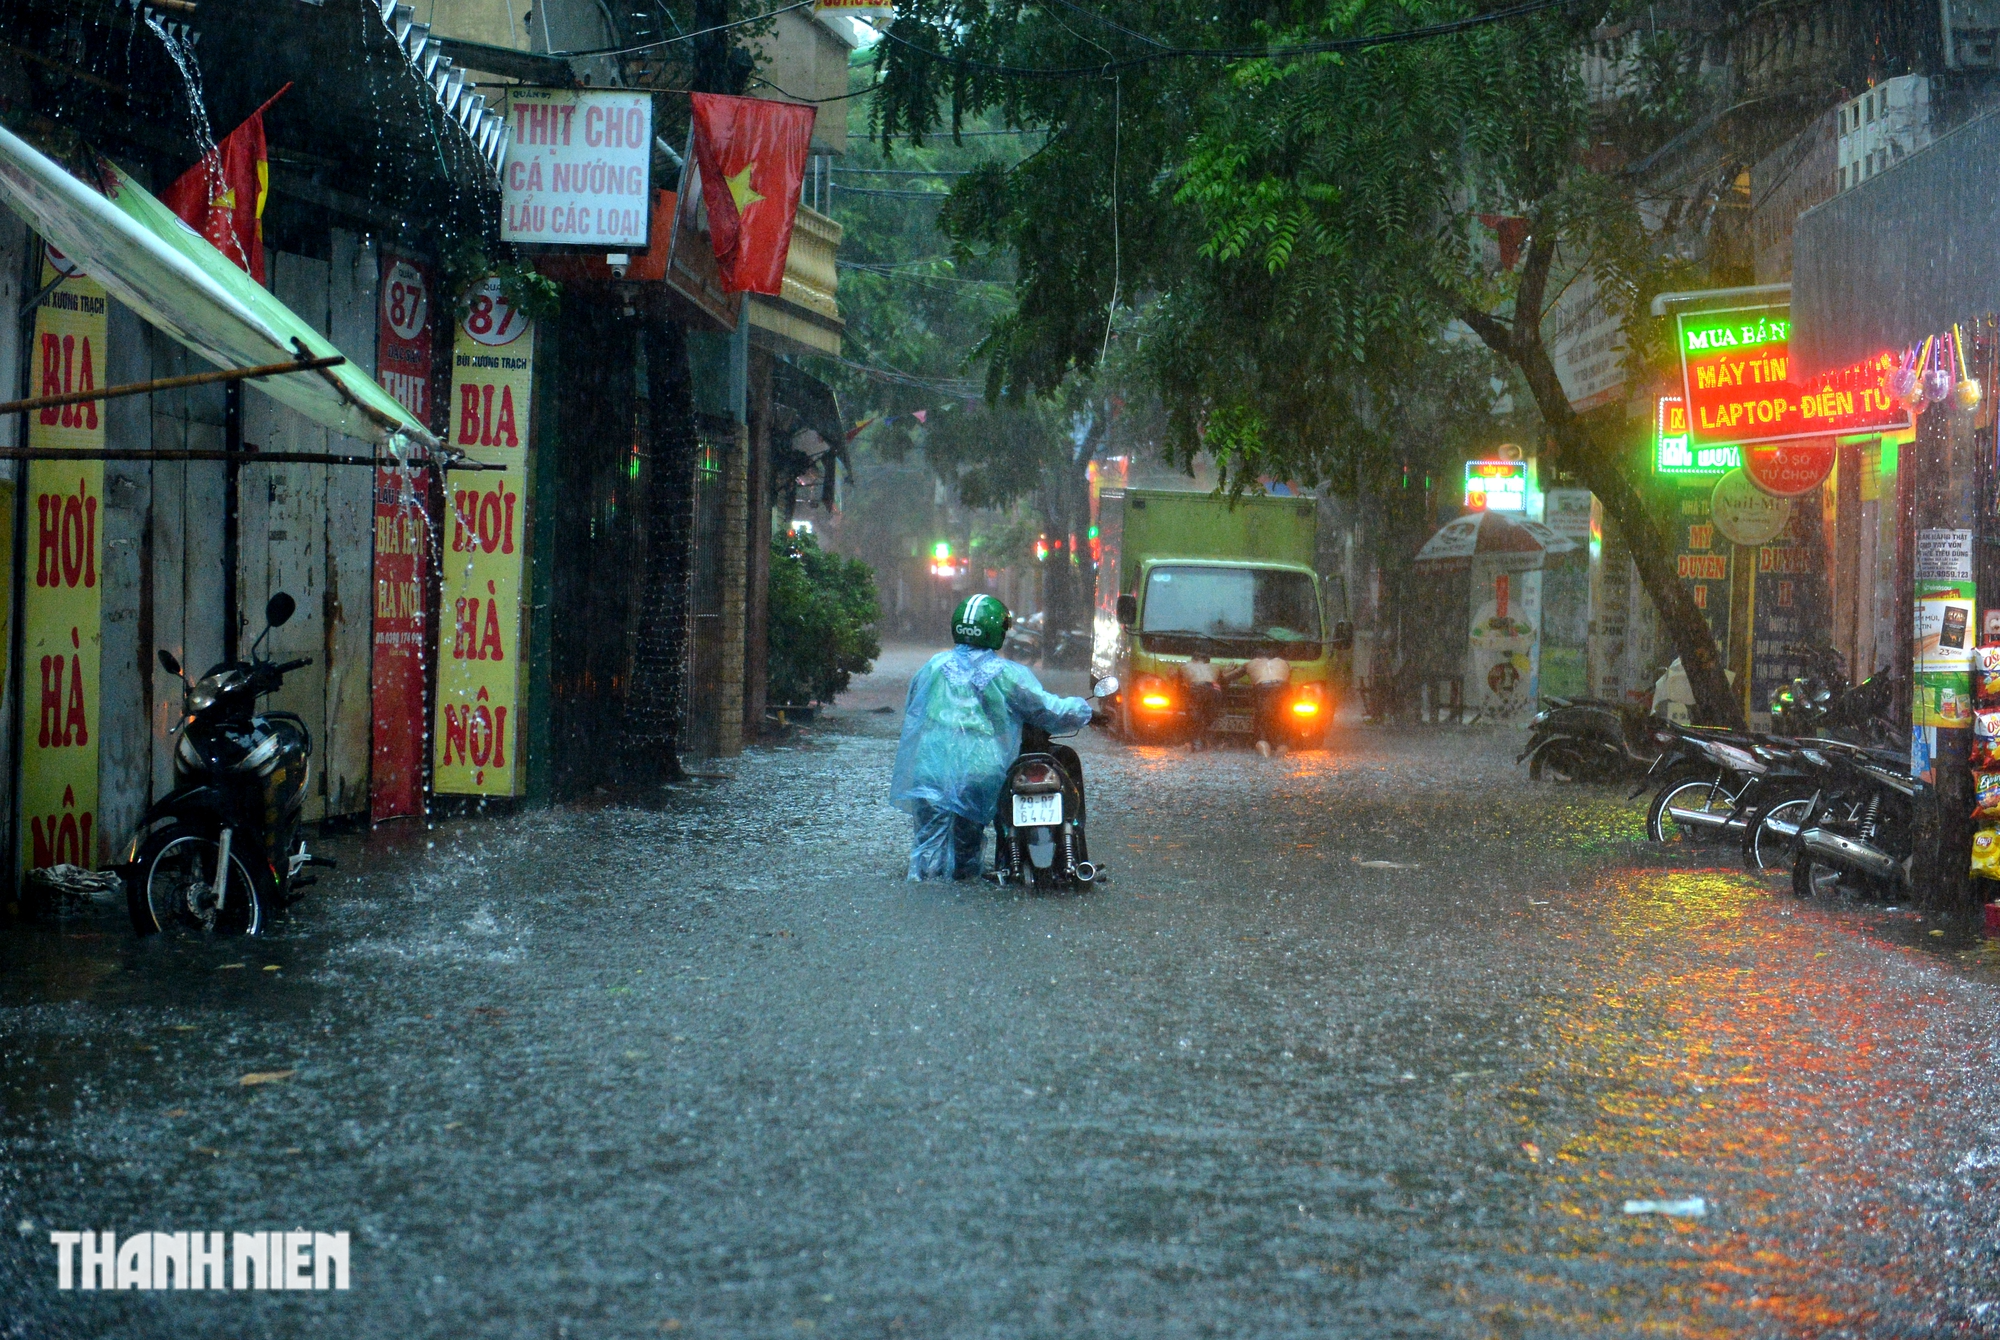 Hà Nội 'ngập như sông' sau mưa lớn, người dân khổ sở nhích từng mét trên đường - Ảnh 3.